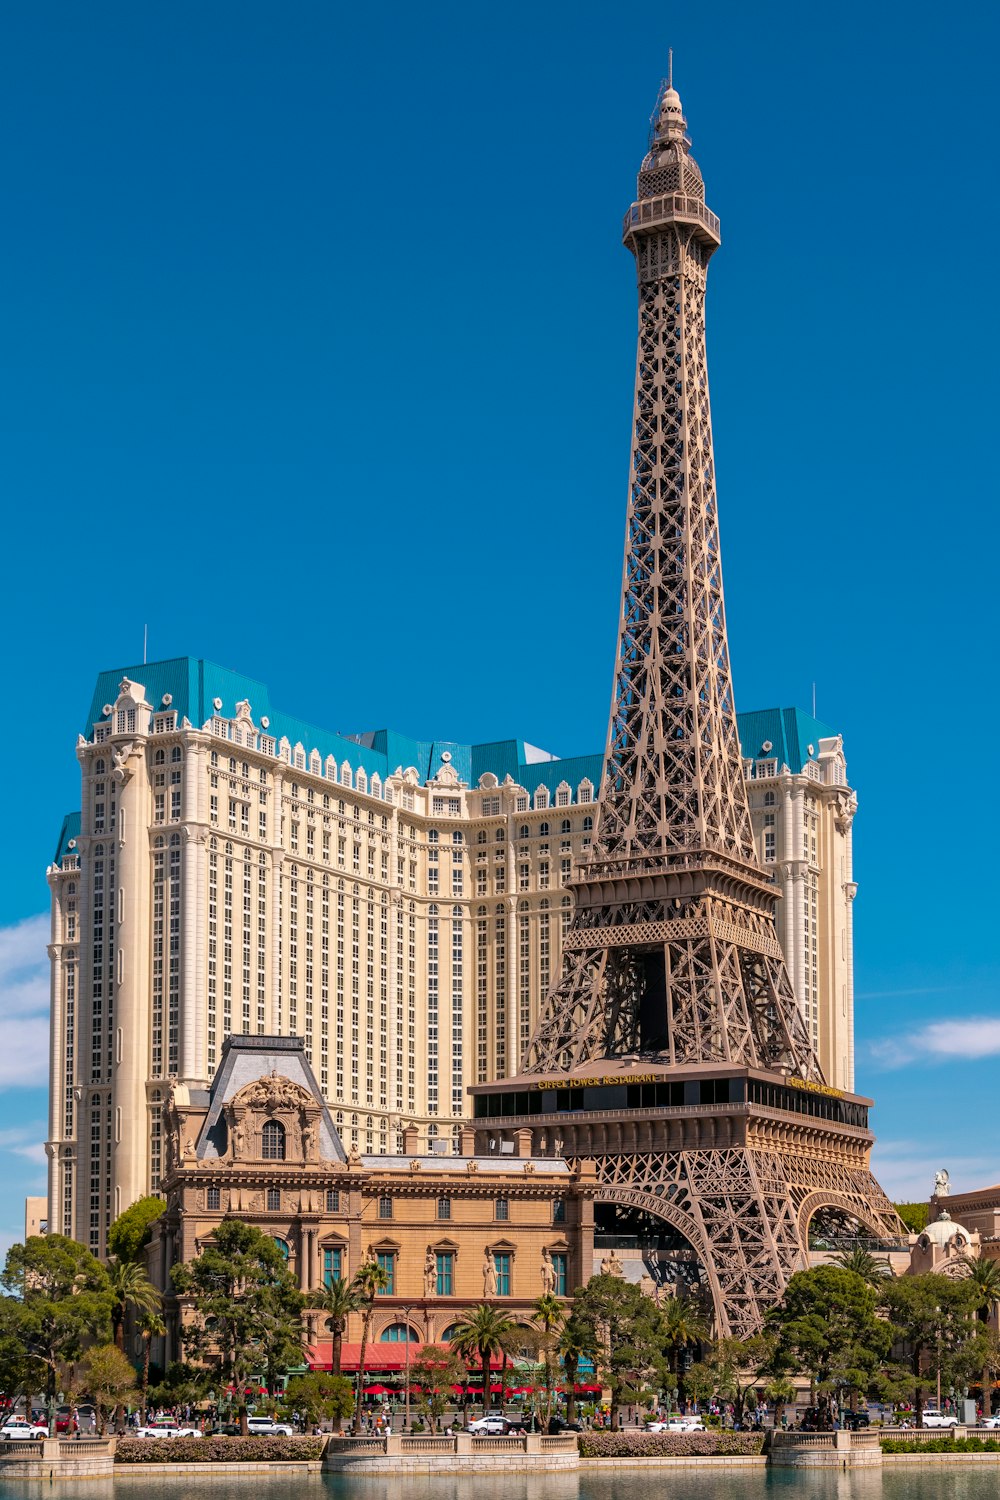 The eiffel tower in paris, france photo – Free Paris las vegas